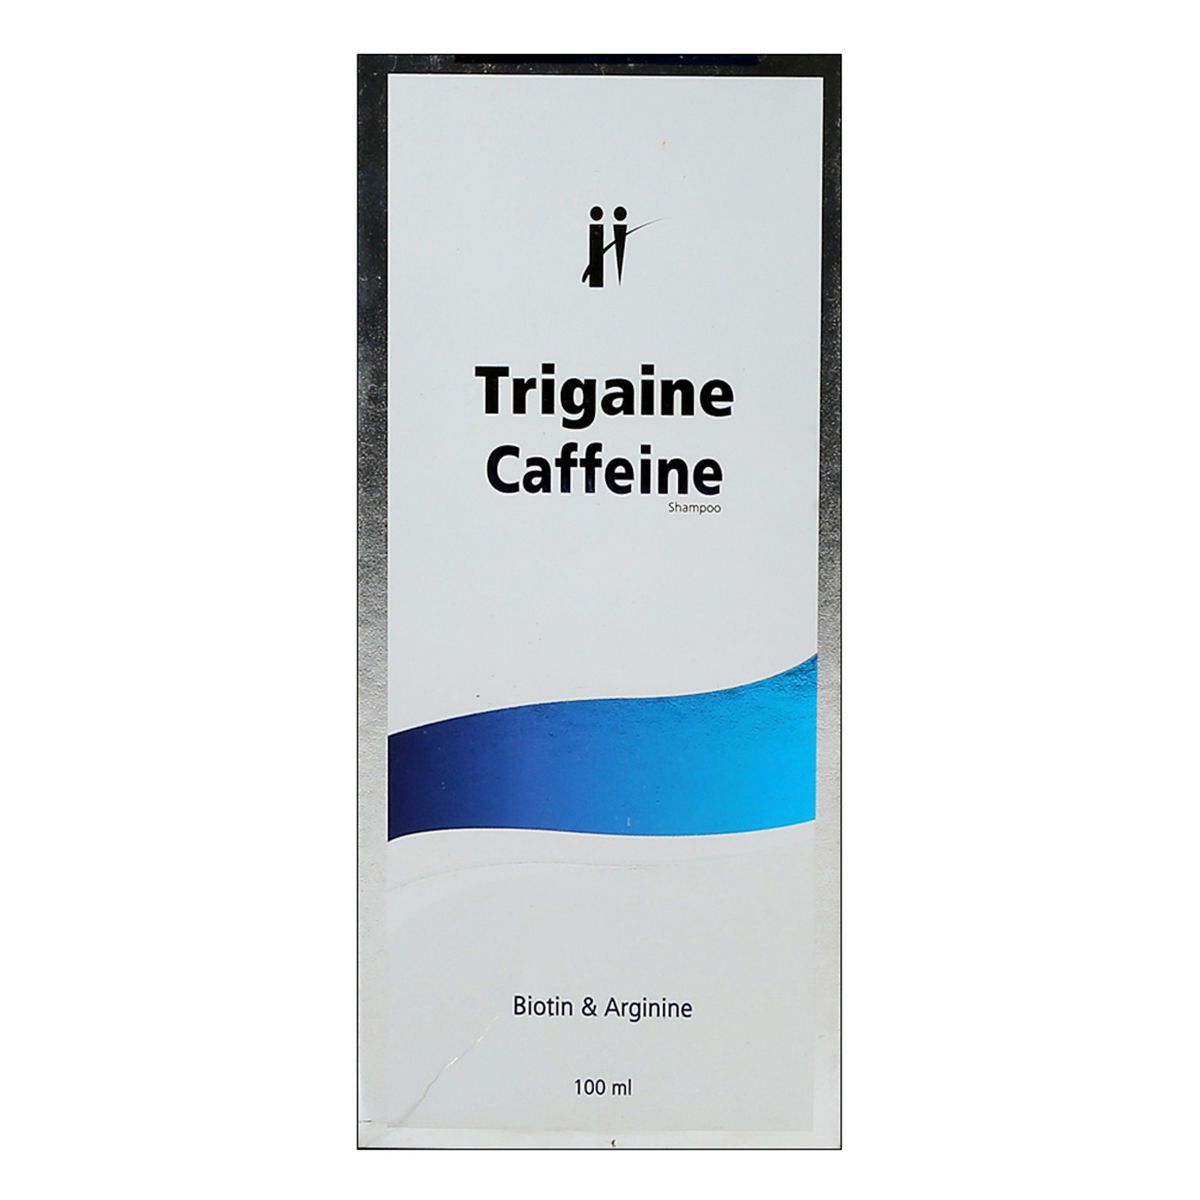 Buy Trigaine Caffeine Shampoo, 100 ml Online